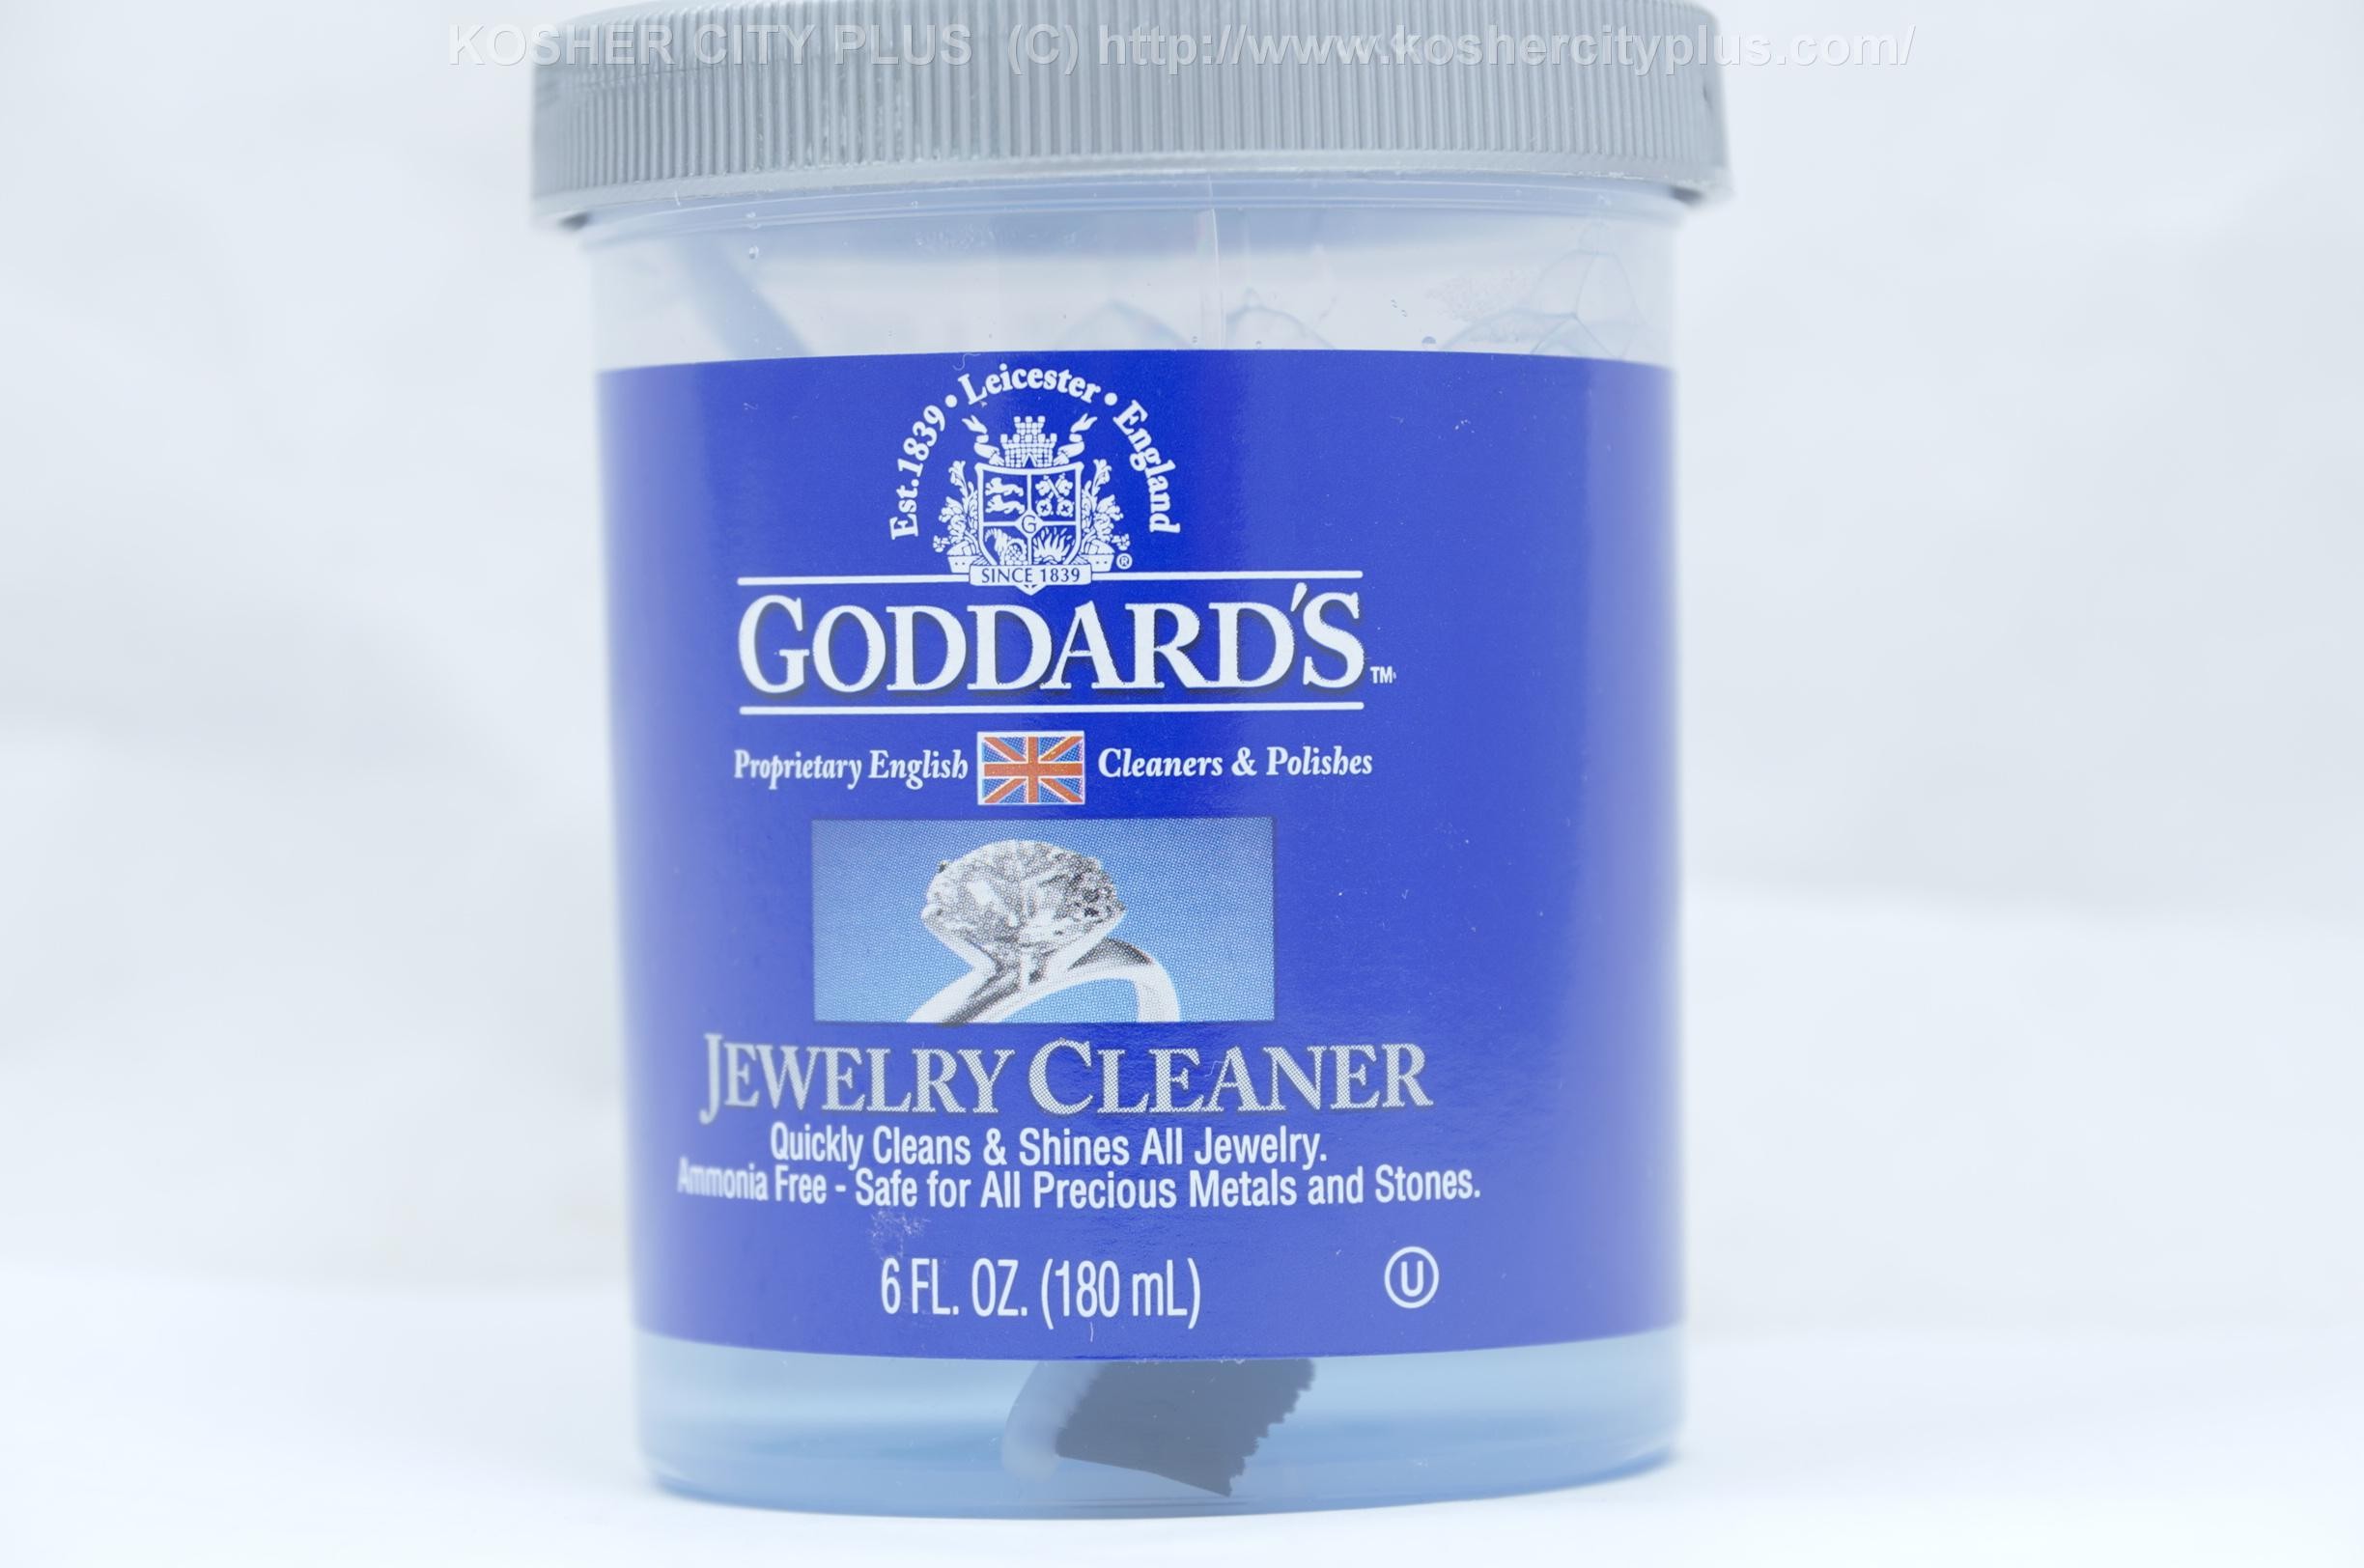 Goddards Jewelry Cleaner - 6 fl oz